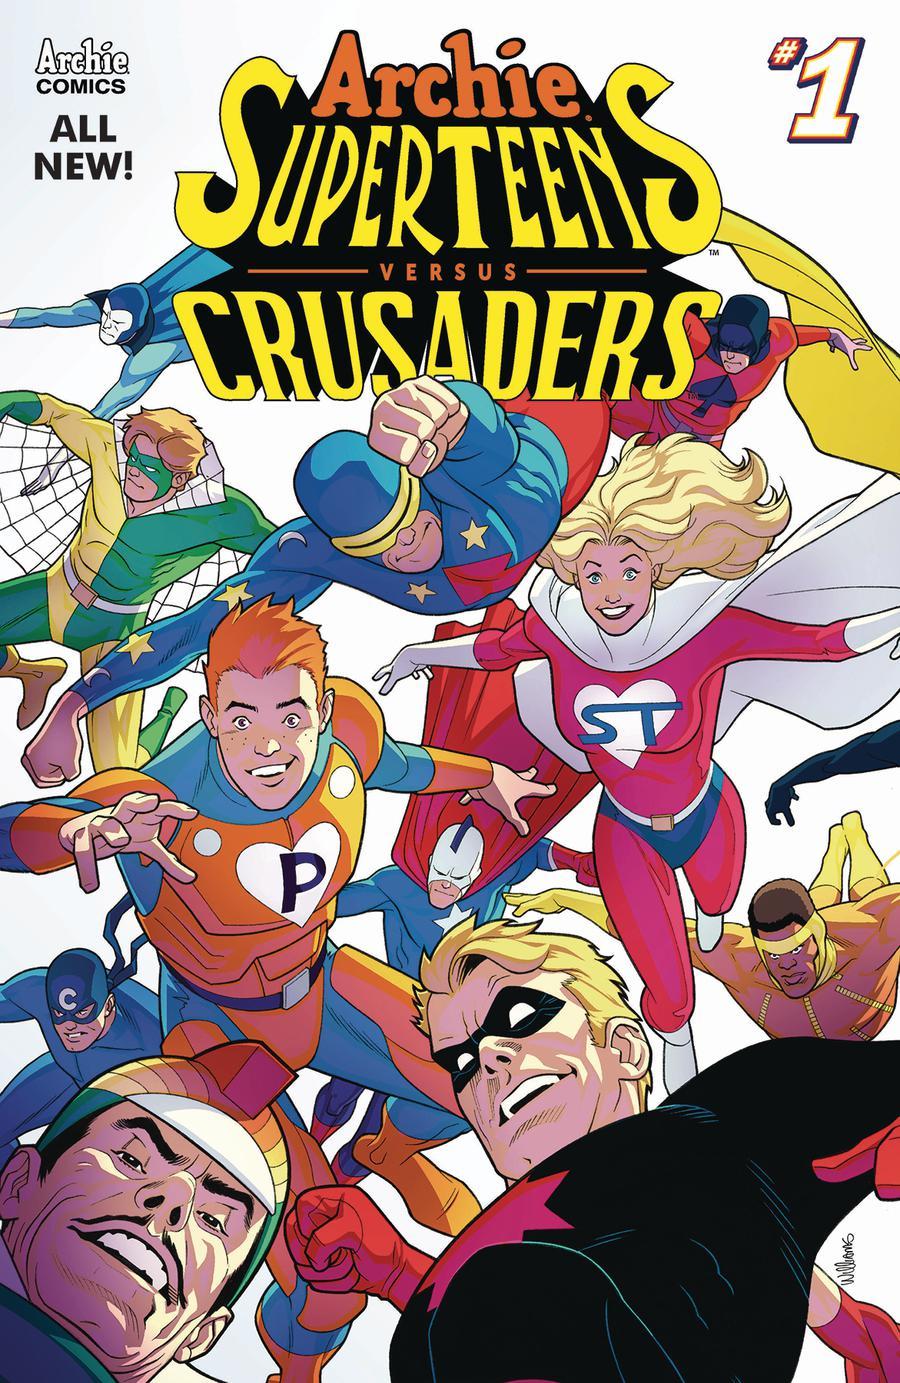 Archie Superteens Versus Crusaders Vol. 1 #1